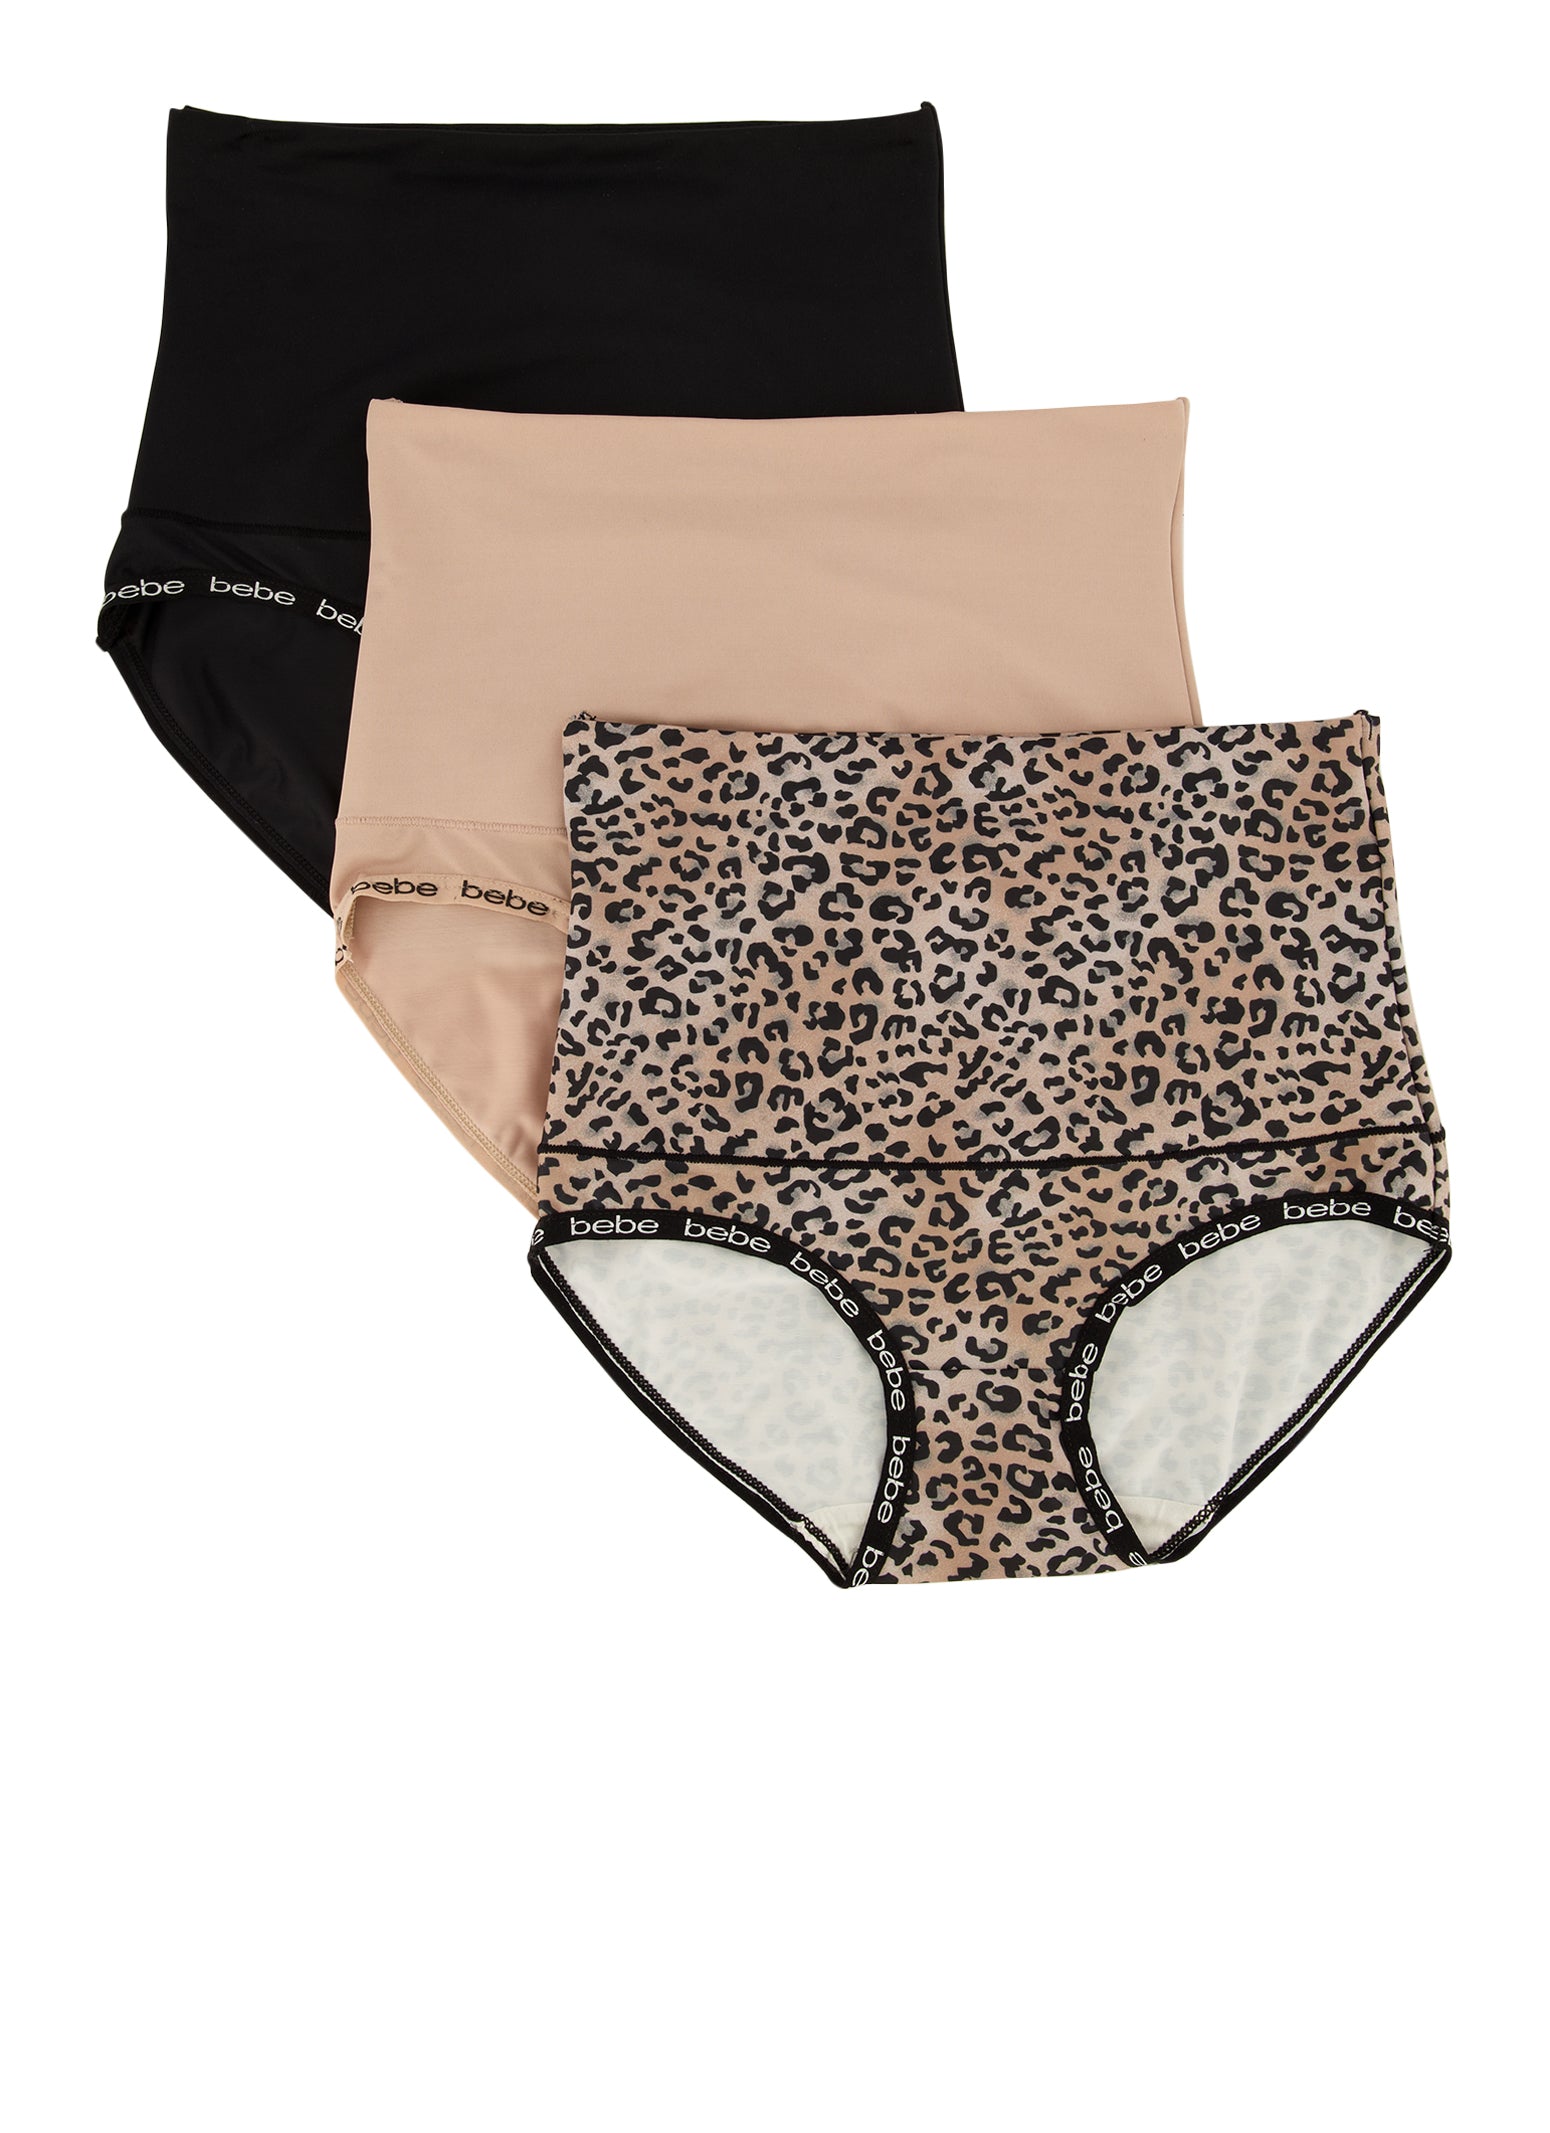 Bebe 3 Pack Leopard Print Shapewear Panties - Black Ptn